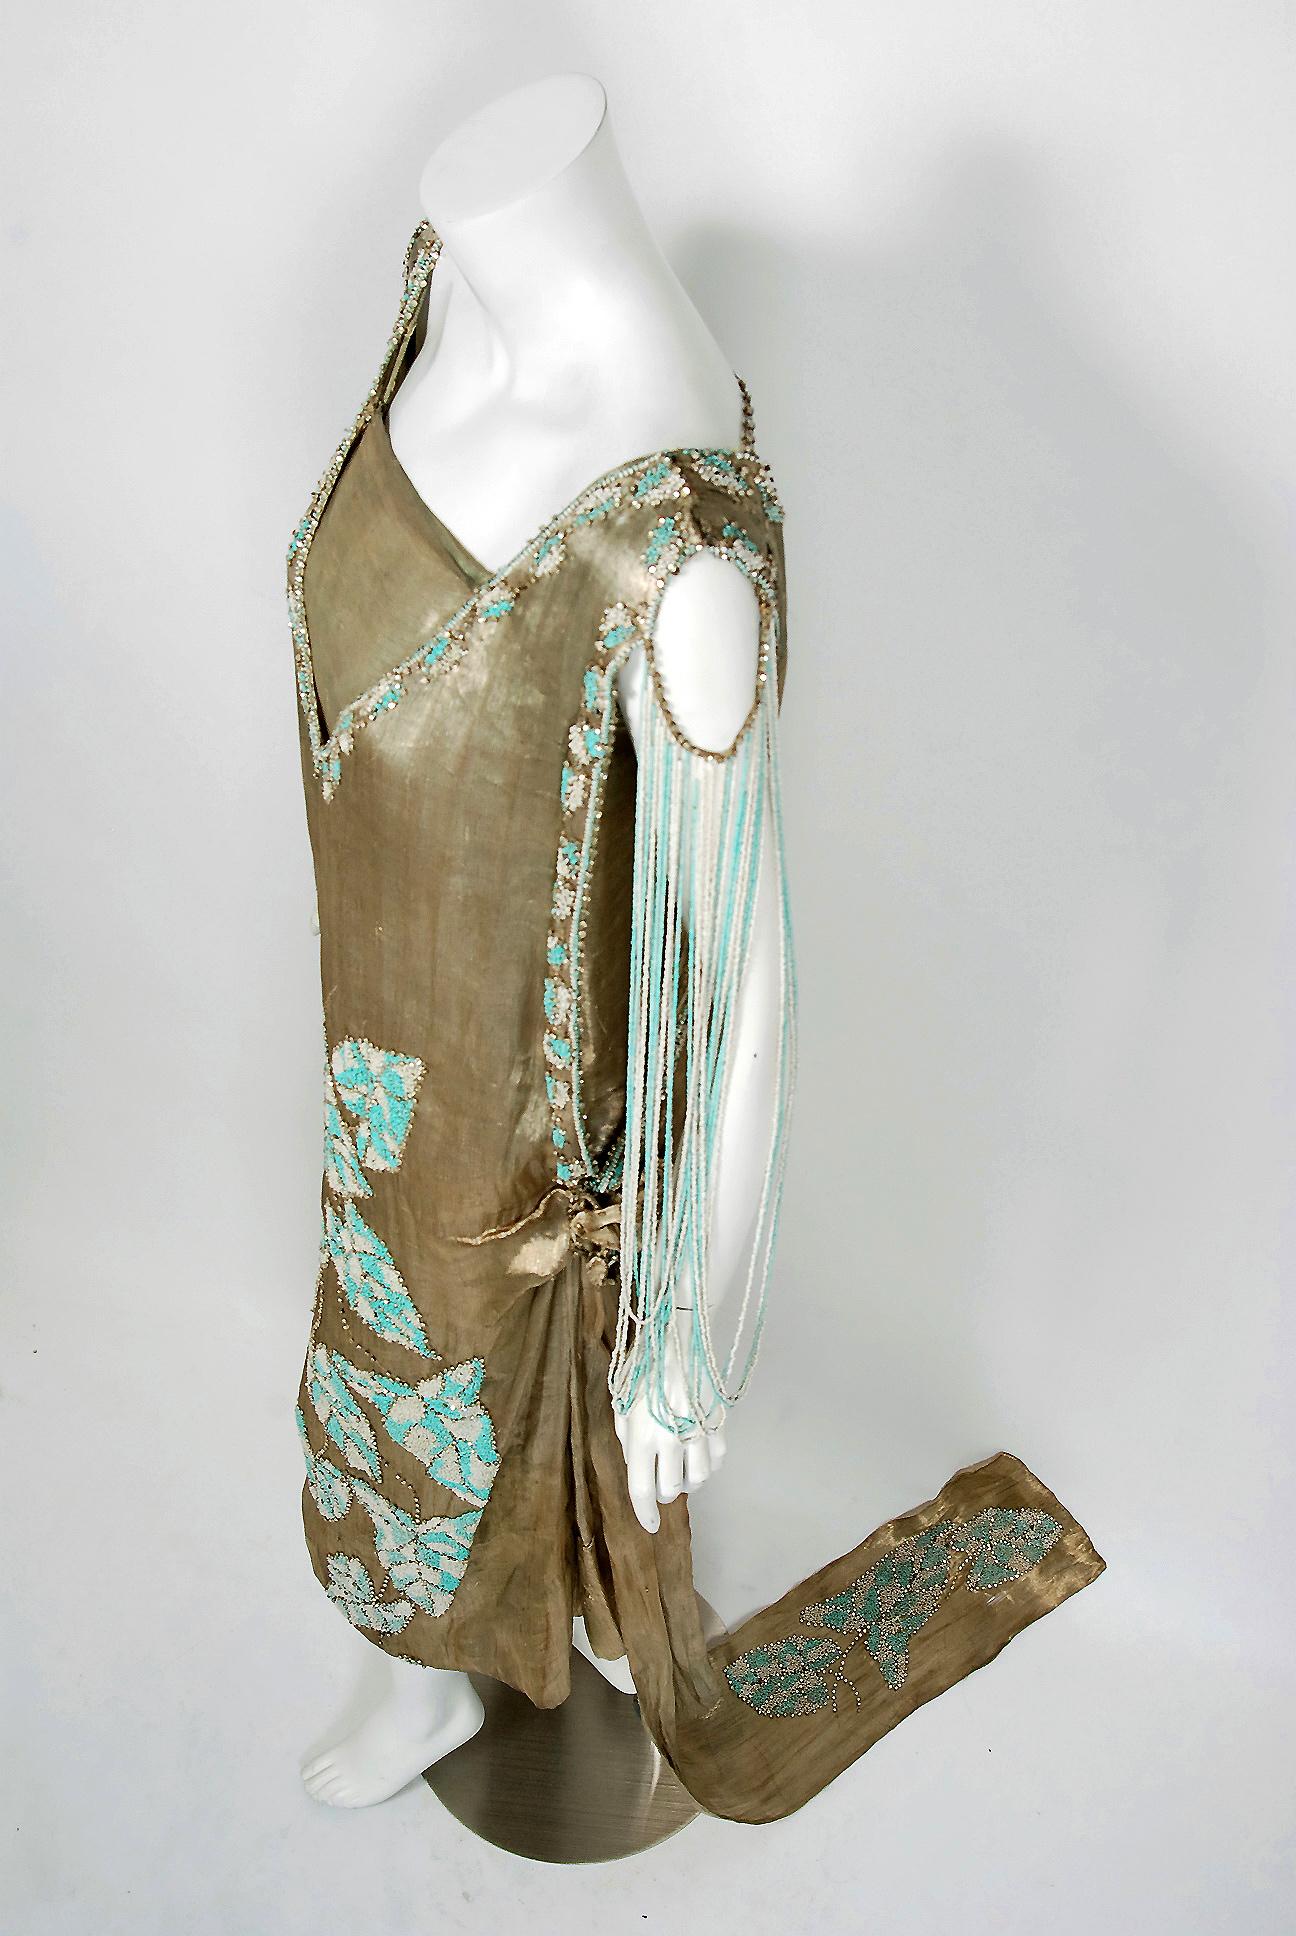 Atemberaubende Mitte der 1920er Jahre Französisch Couture Museum-Qualität Perlen und Juwelen metallischen Lamé Abend trainiert Kleid. Die dramatische goldene Farbpalette berührt unser kollektives ästhetisches Bewusstsein zutiefst. Als Modeliebhaber